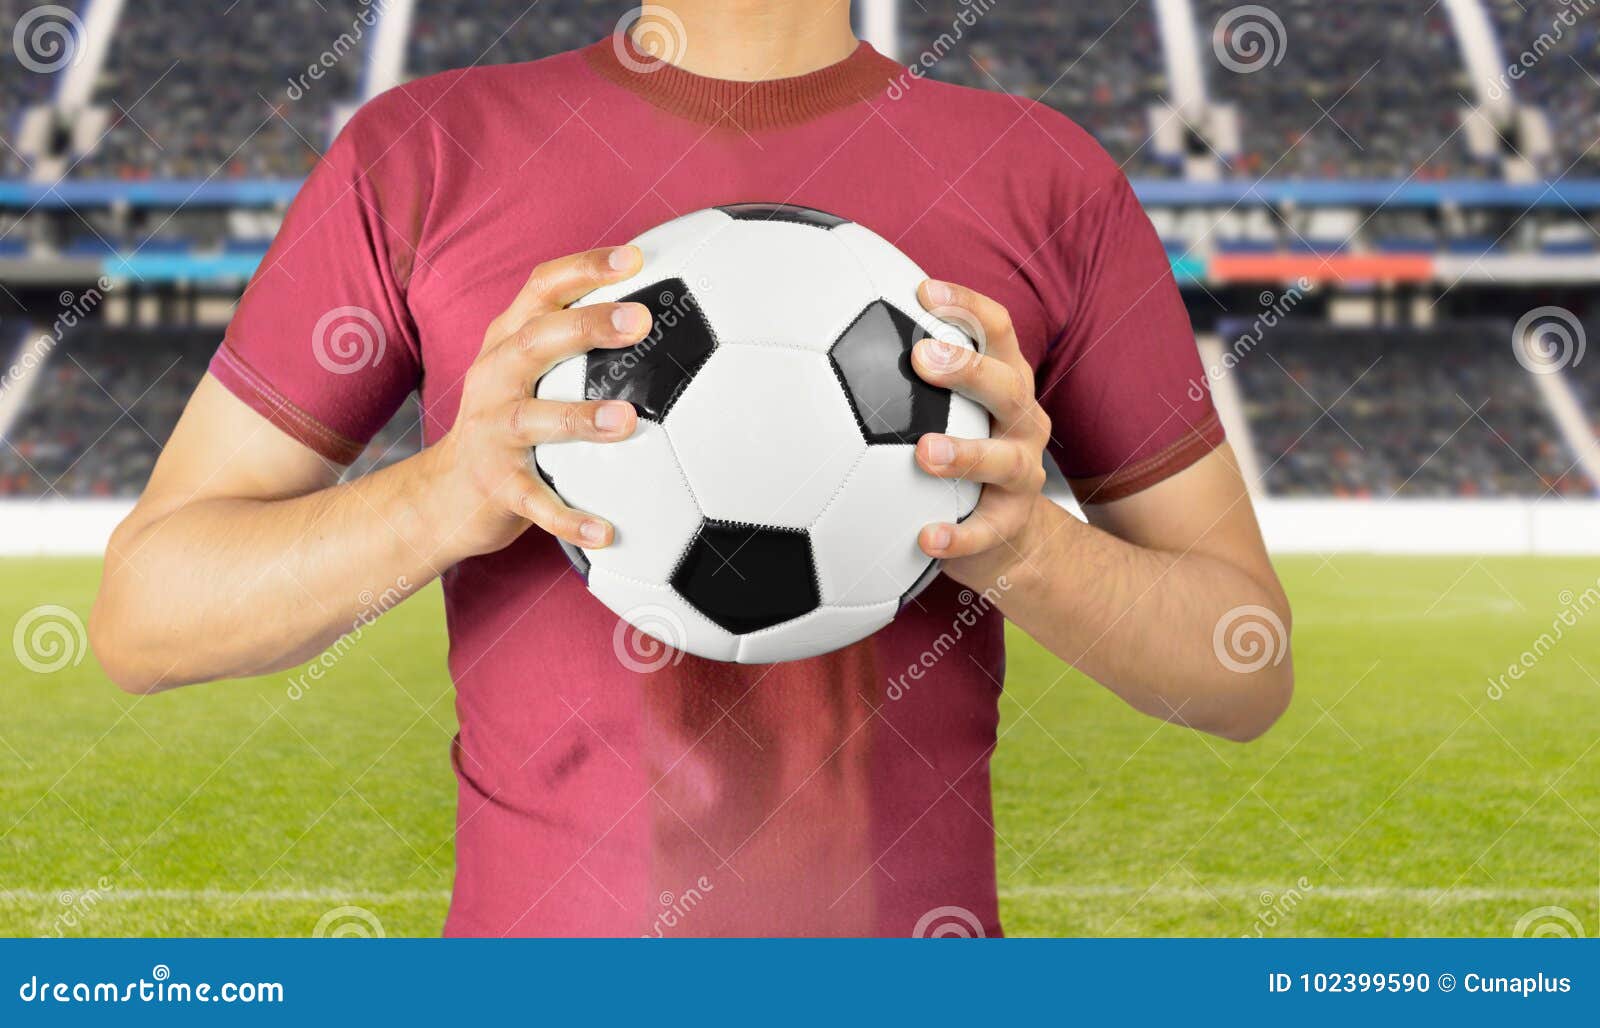 Футболист держит мяч. Футболист держит мяч в руках. Hold a Ball. Футболист с мячом в руках. Hold players